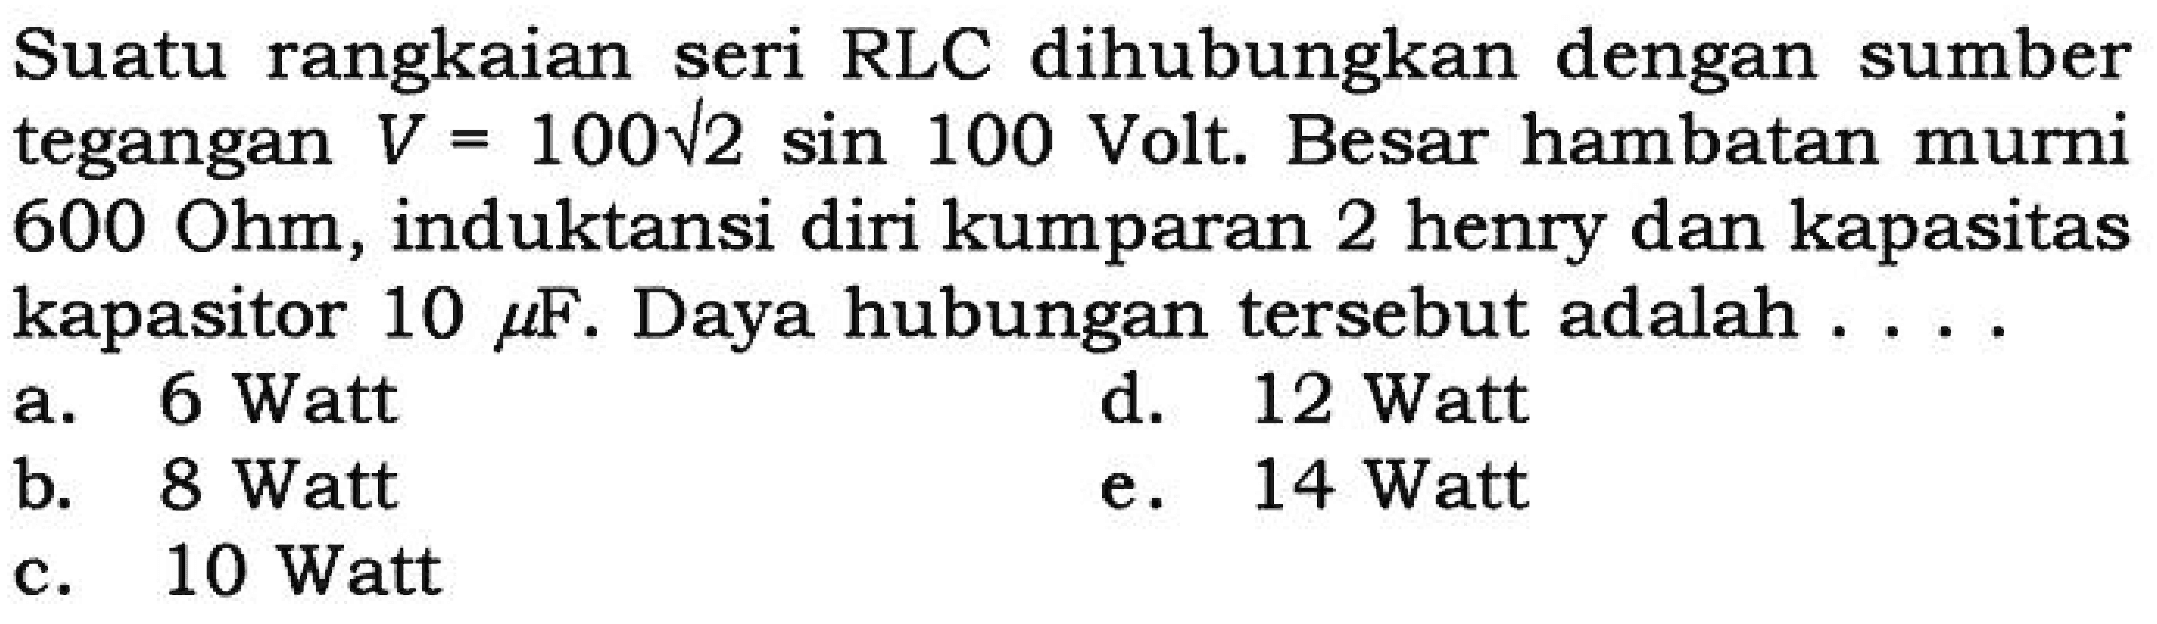 Suatu rangkaian seri RLC dihubungkan dengan sumber tegangan V = 100 akar(2) sin 100 Volt. Besar hambatan murni 600 Ohm, induktansi diri kumparan 2 henry dan kapasitas kapasitor 10 mikro F. Daya hubungan tersebut adalah ....
